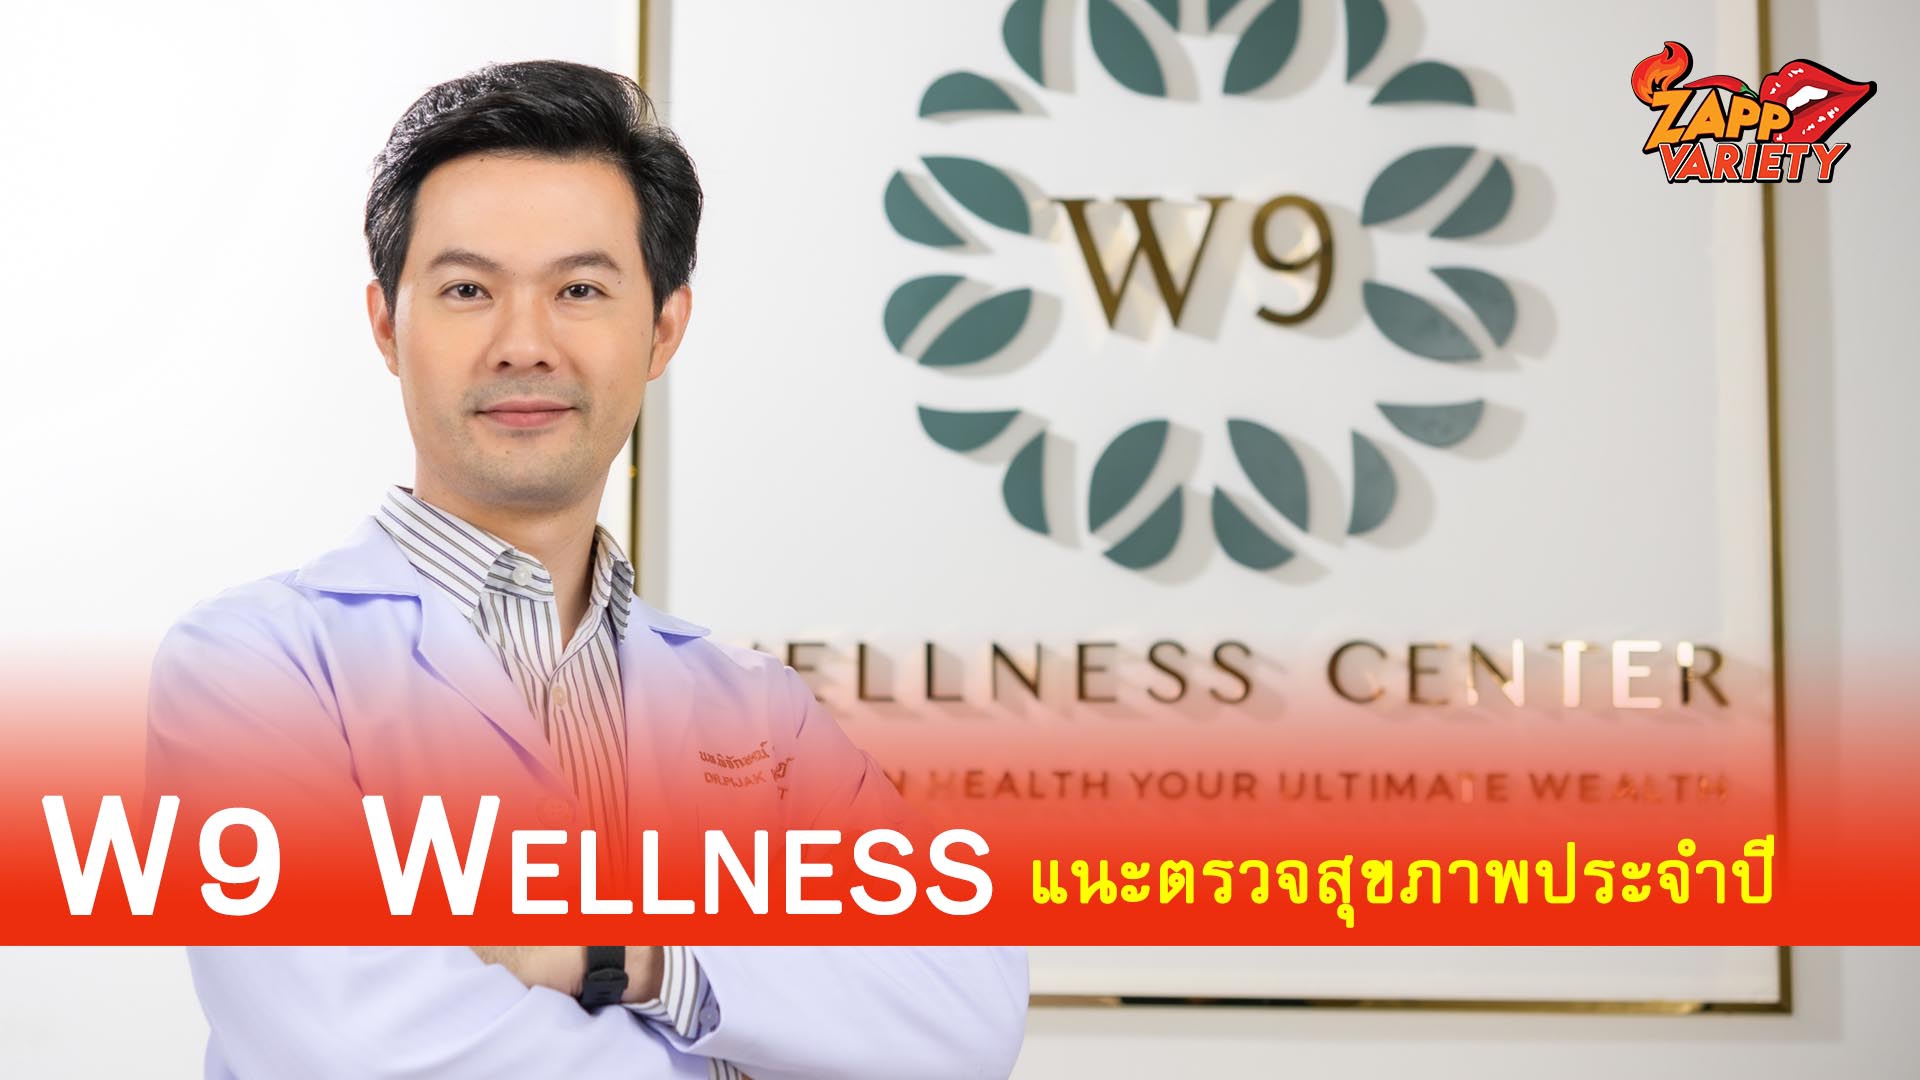 W9 Wellness แนะตรวจสุขภาพประจำปี ควบโปรแกรมตรวจเชิง Wellness  ชี้เทรนด์ใหม่ขานรับเจาะกลุ่มคนรักสุขภาพและผู้สูงวัย